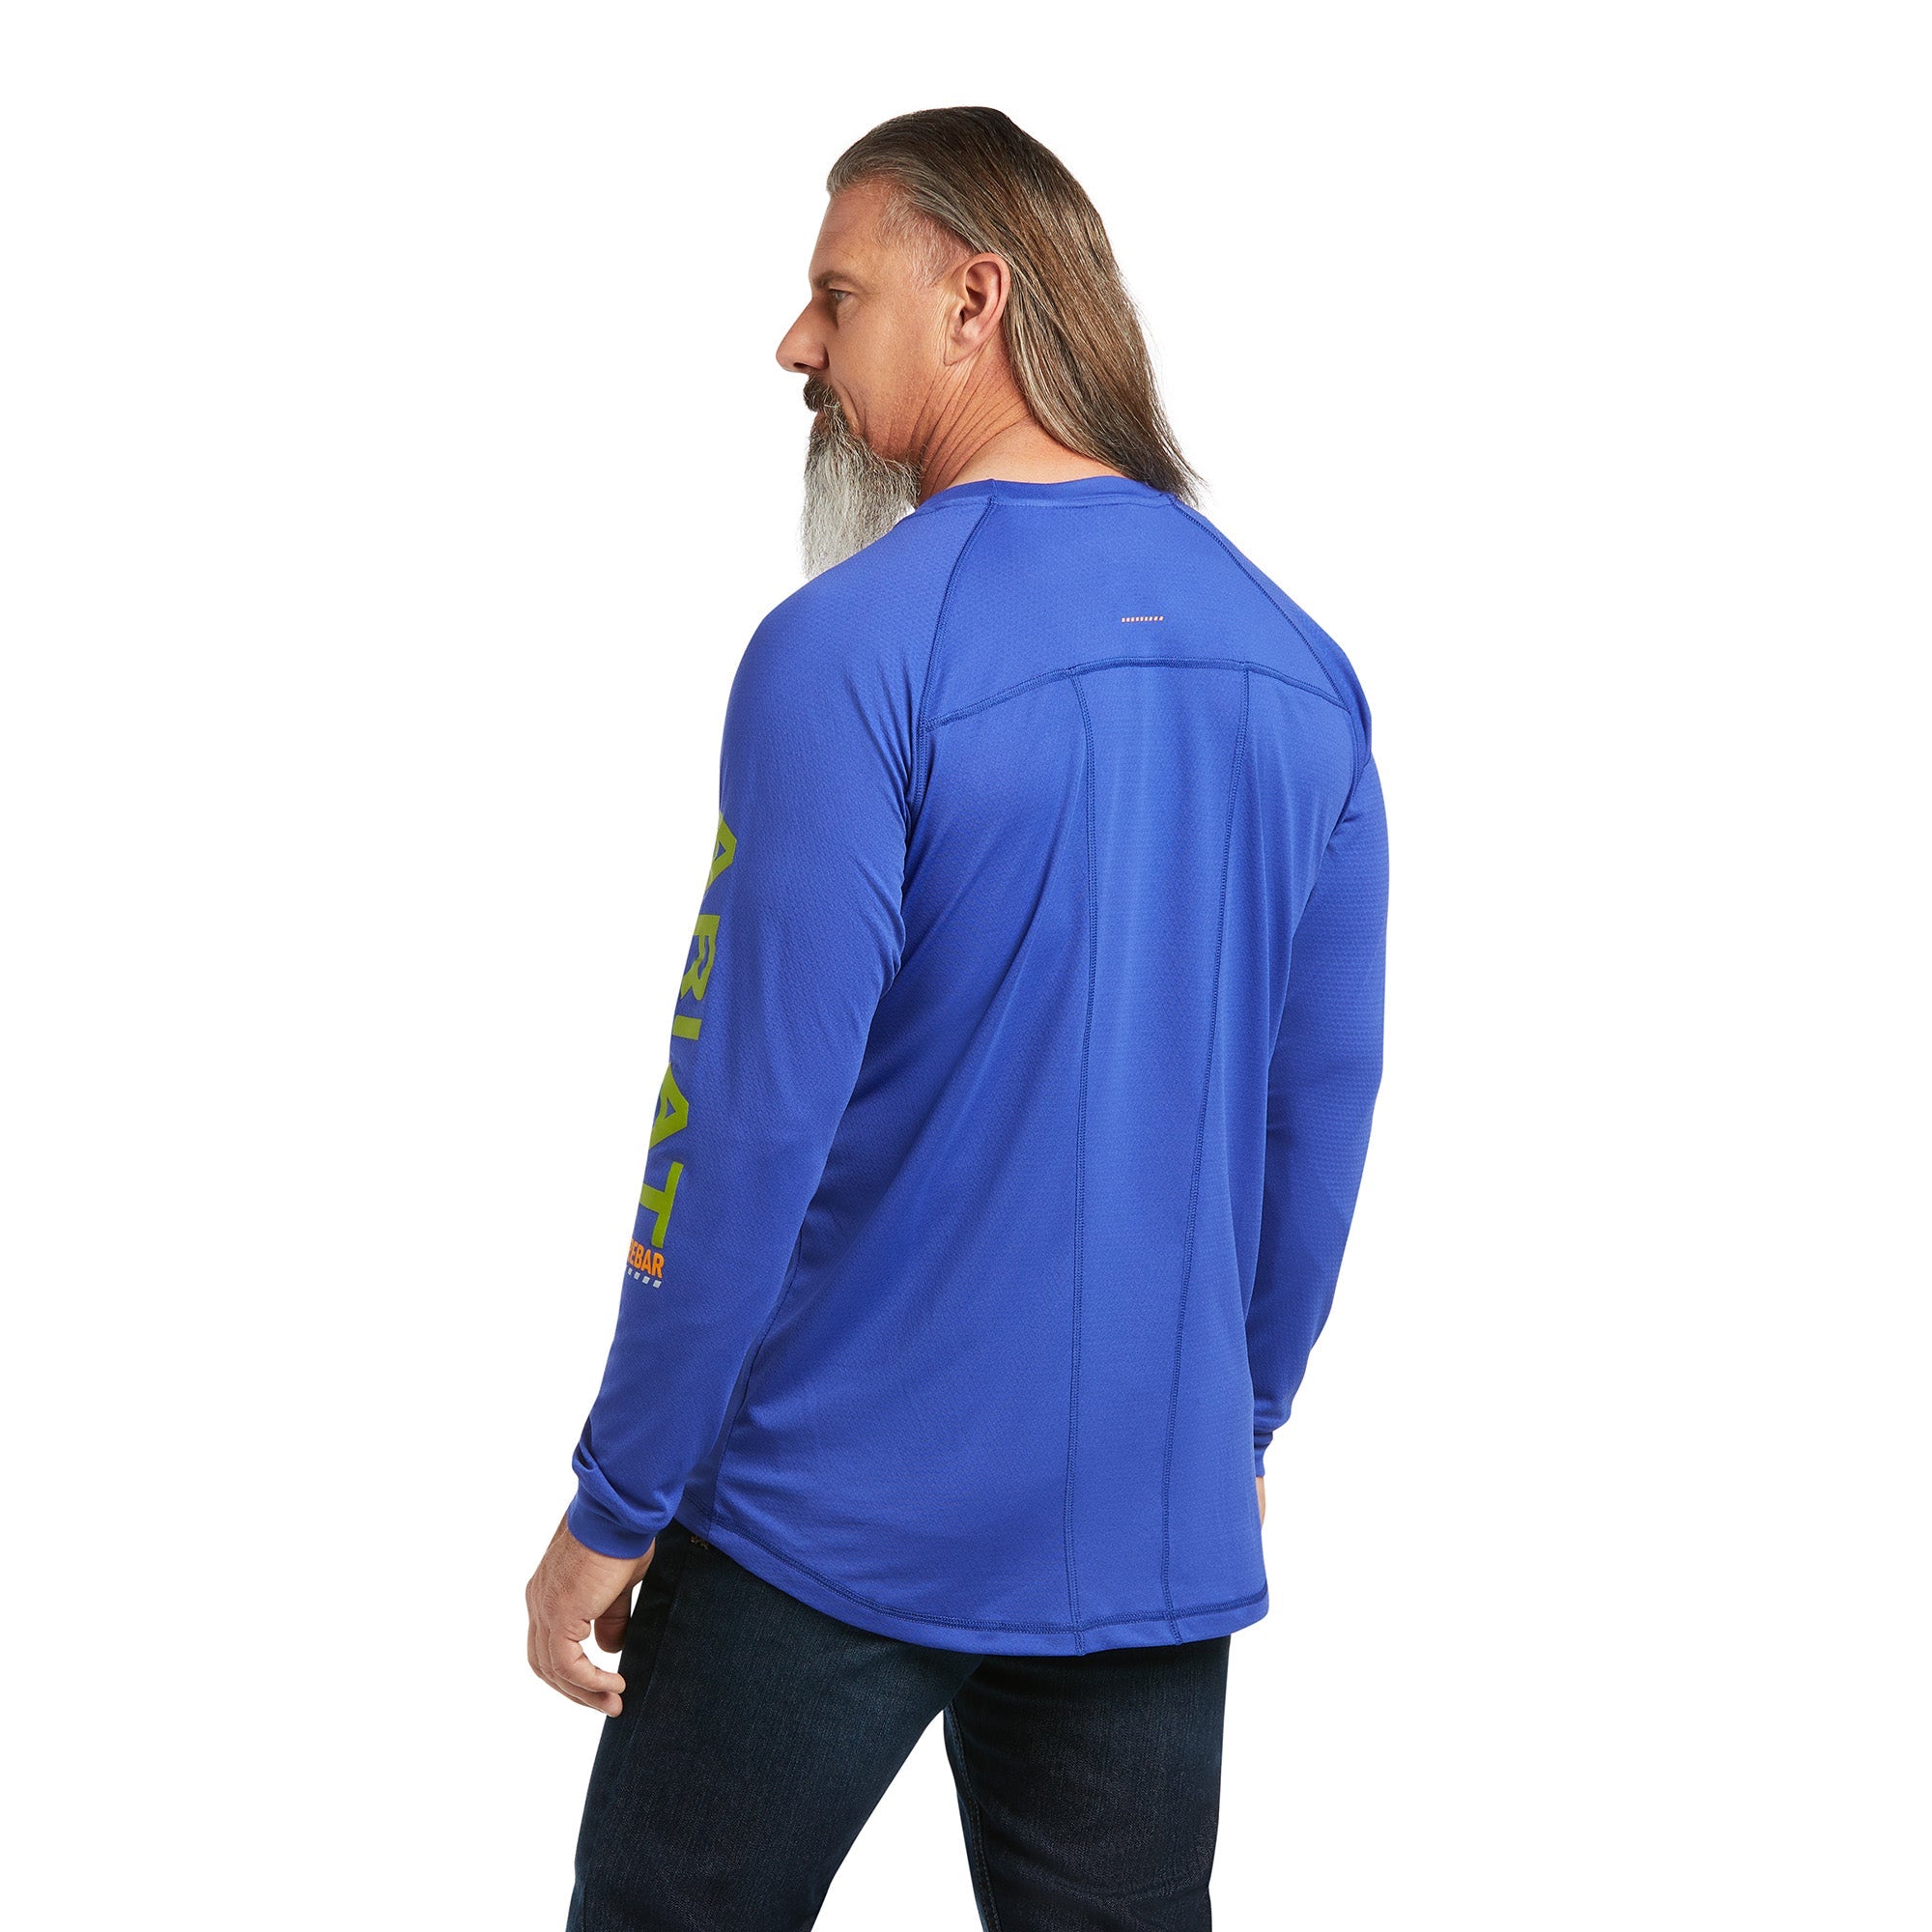 MNS REBAR HEAT FIGHTER T-Shirt Royal Blue - Reitstiefel Kandel - Dein Reitshop